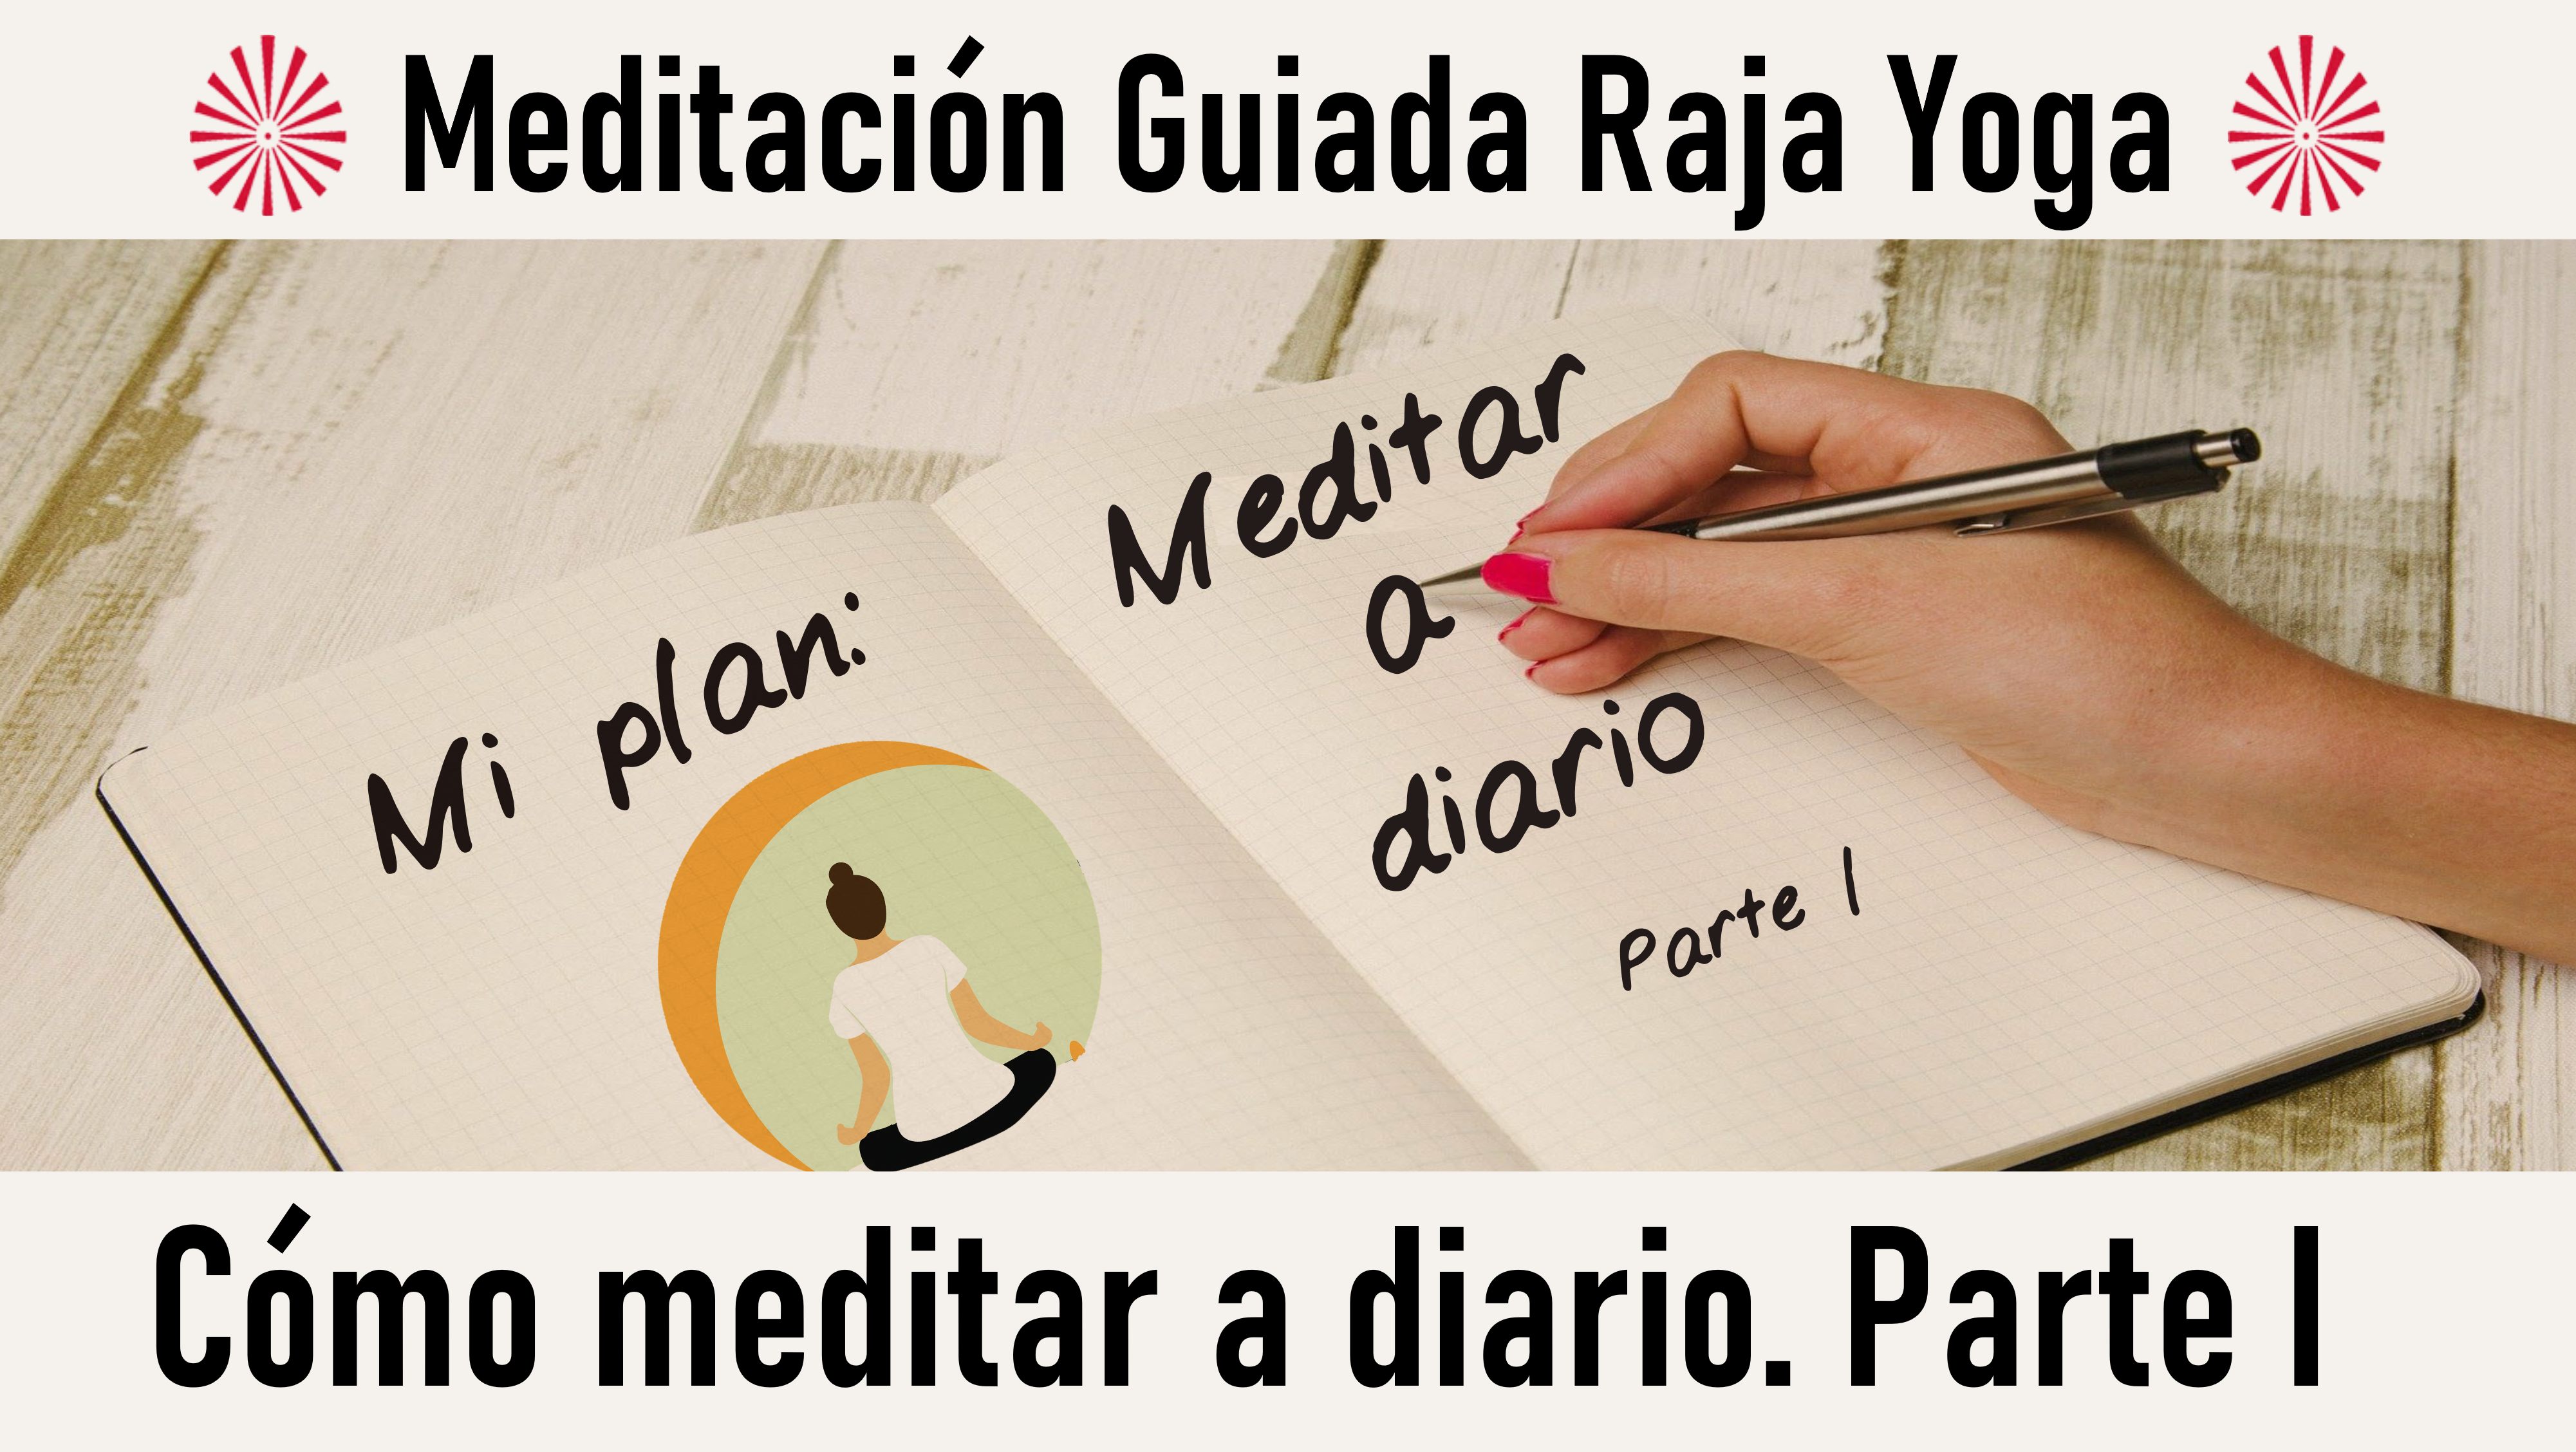 Meditación Raja Yoga: Cómo meditar a diario, parte 1 (11 Octubre 2020) On-line desde Canarias